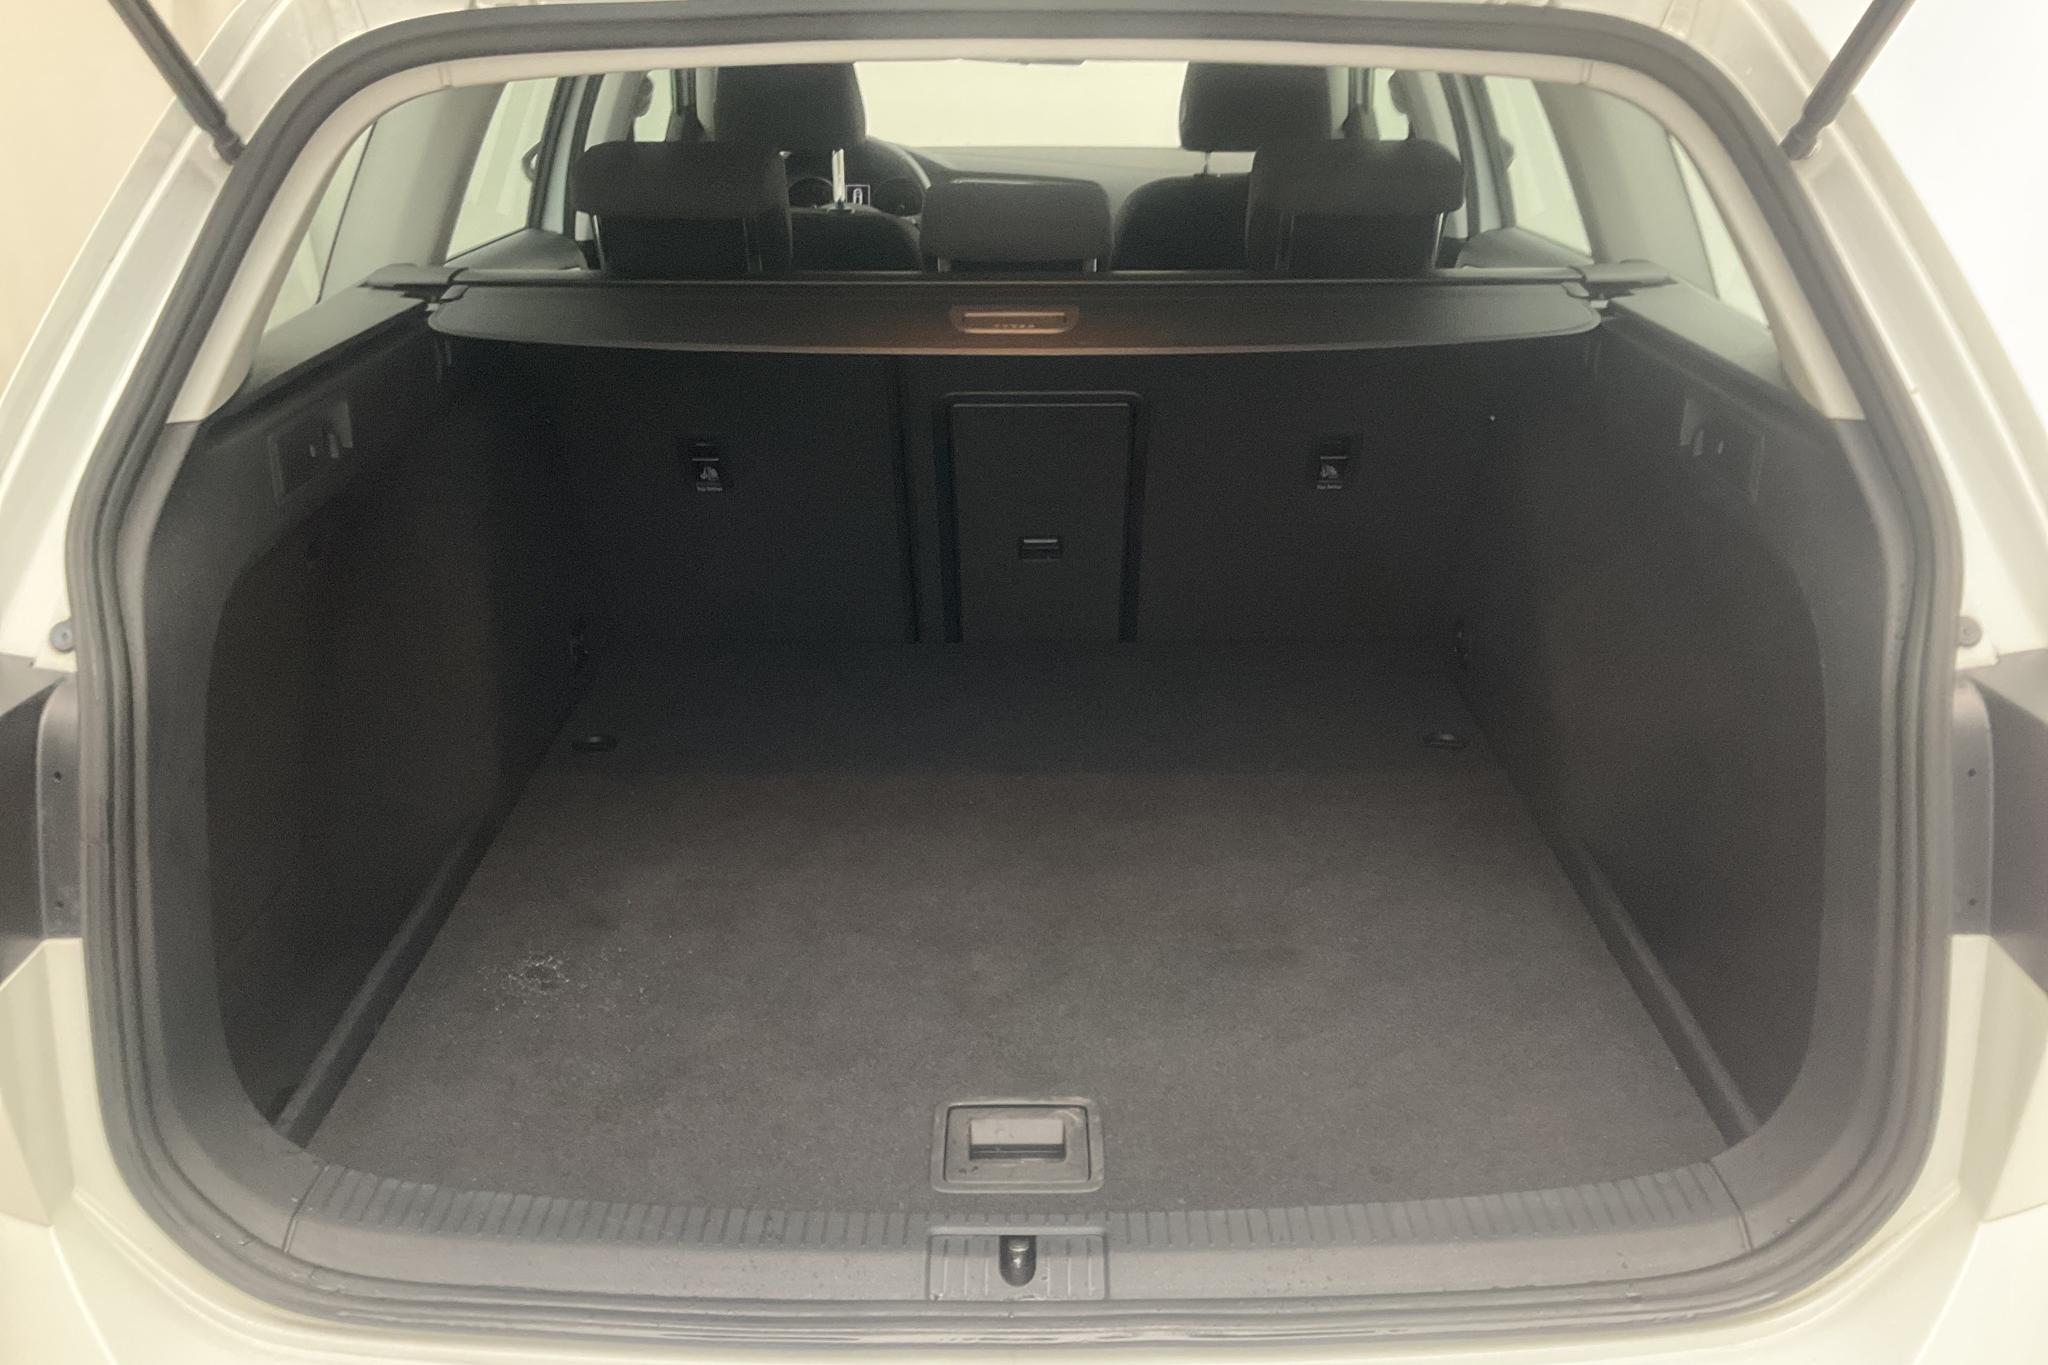 VW Golf VII 1.4 TSI Multifuel Sportscombi (125hk) - 3 583 mil - Manuell - vit - 2017